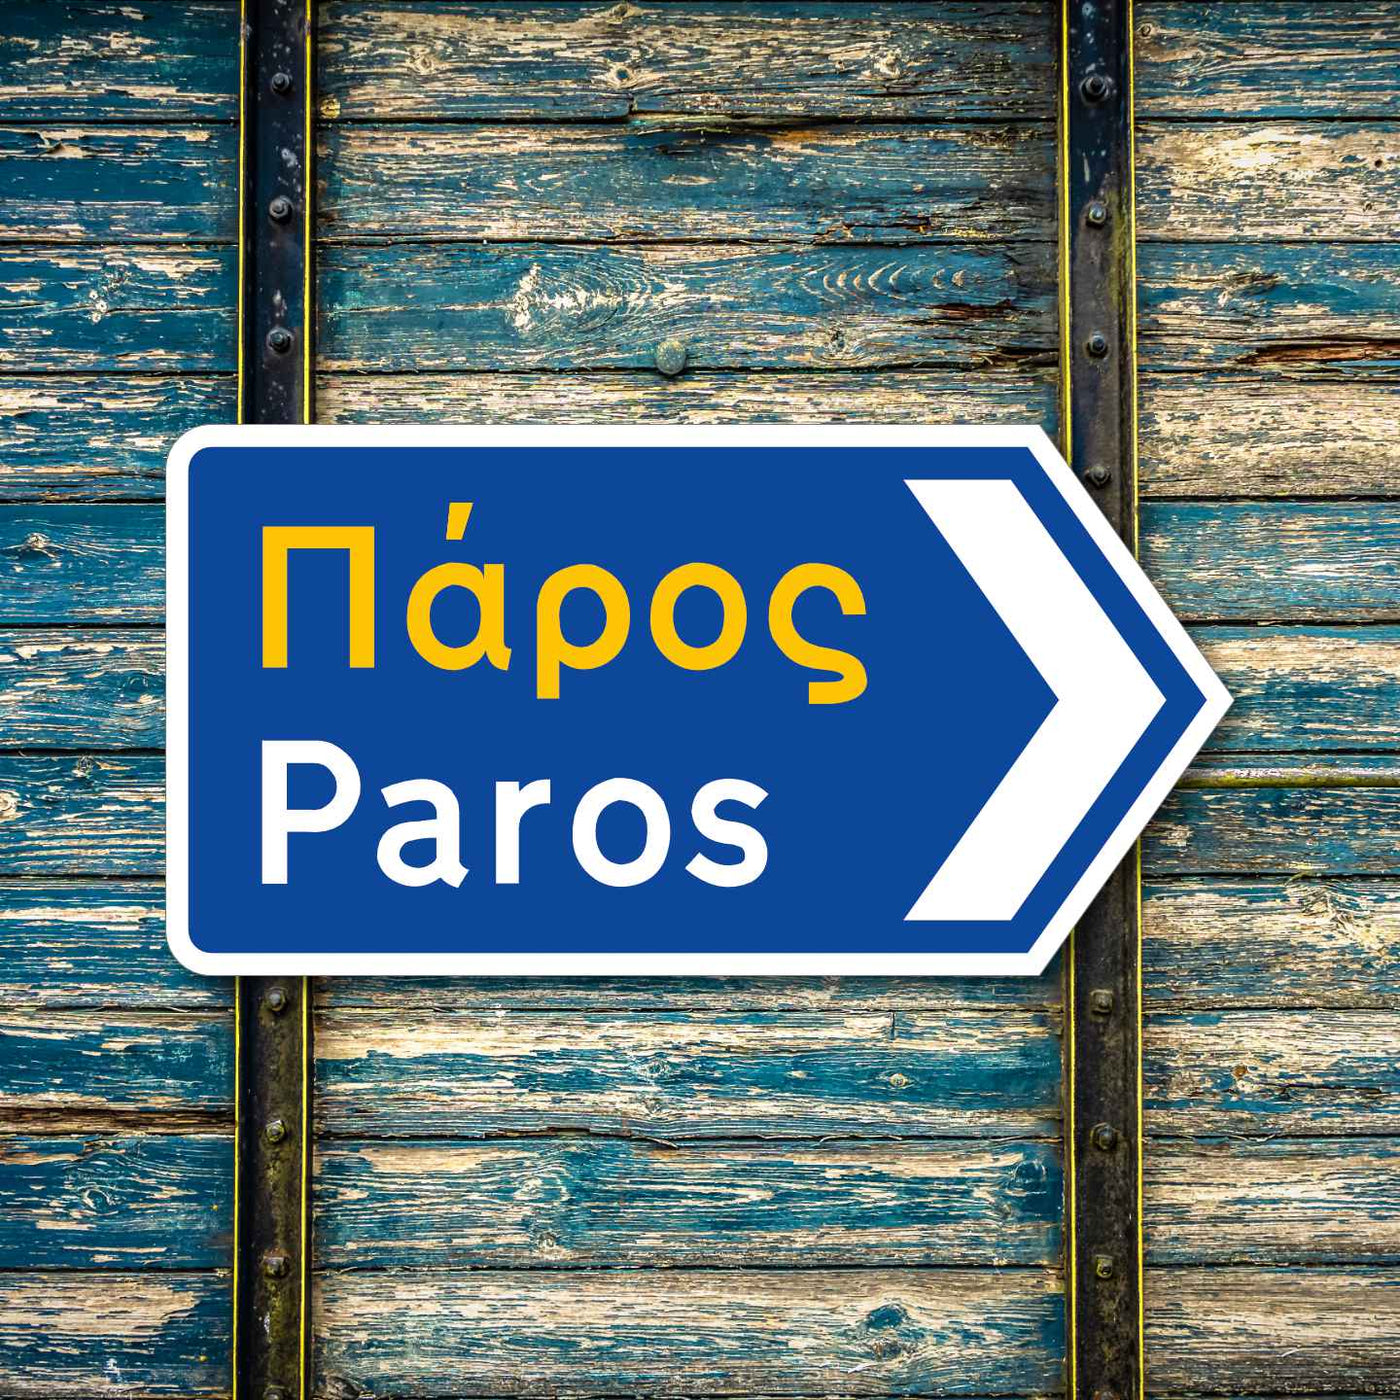 Paros Greek road sign